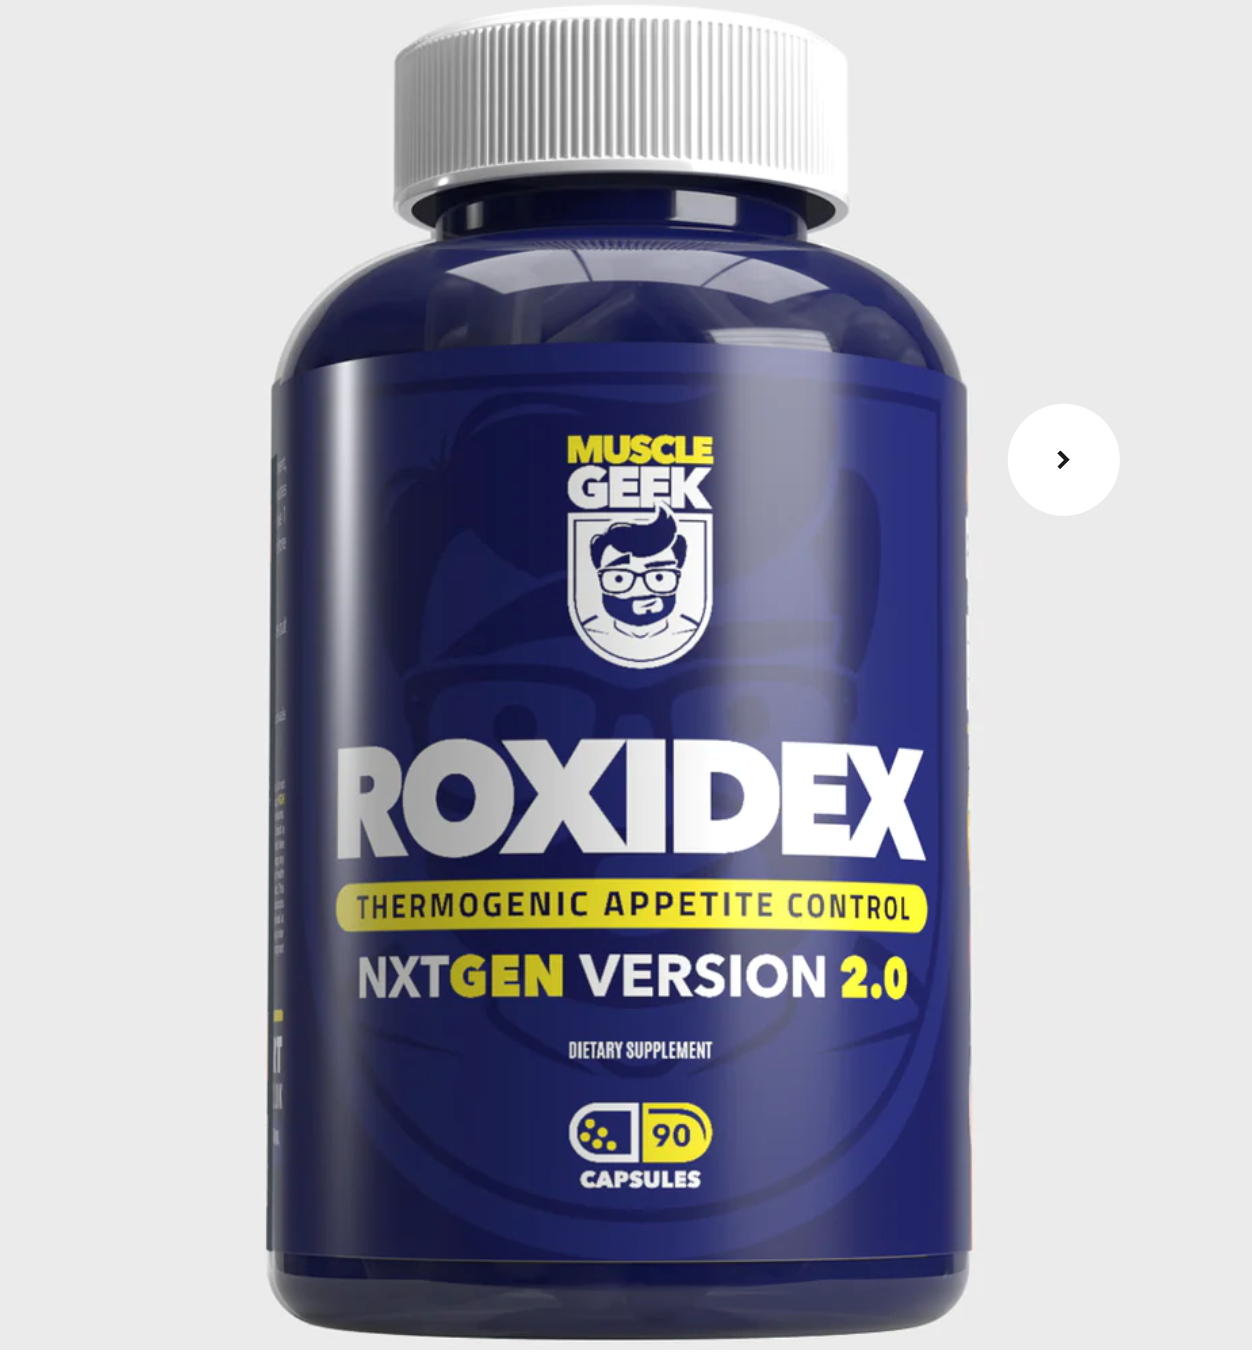 Roxidex